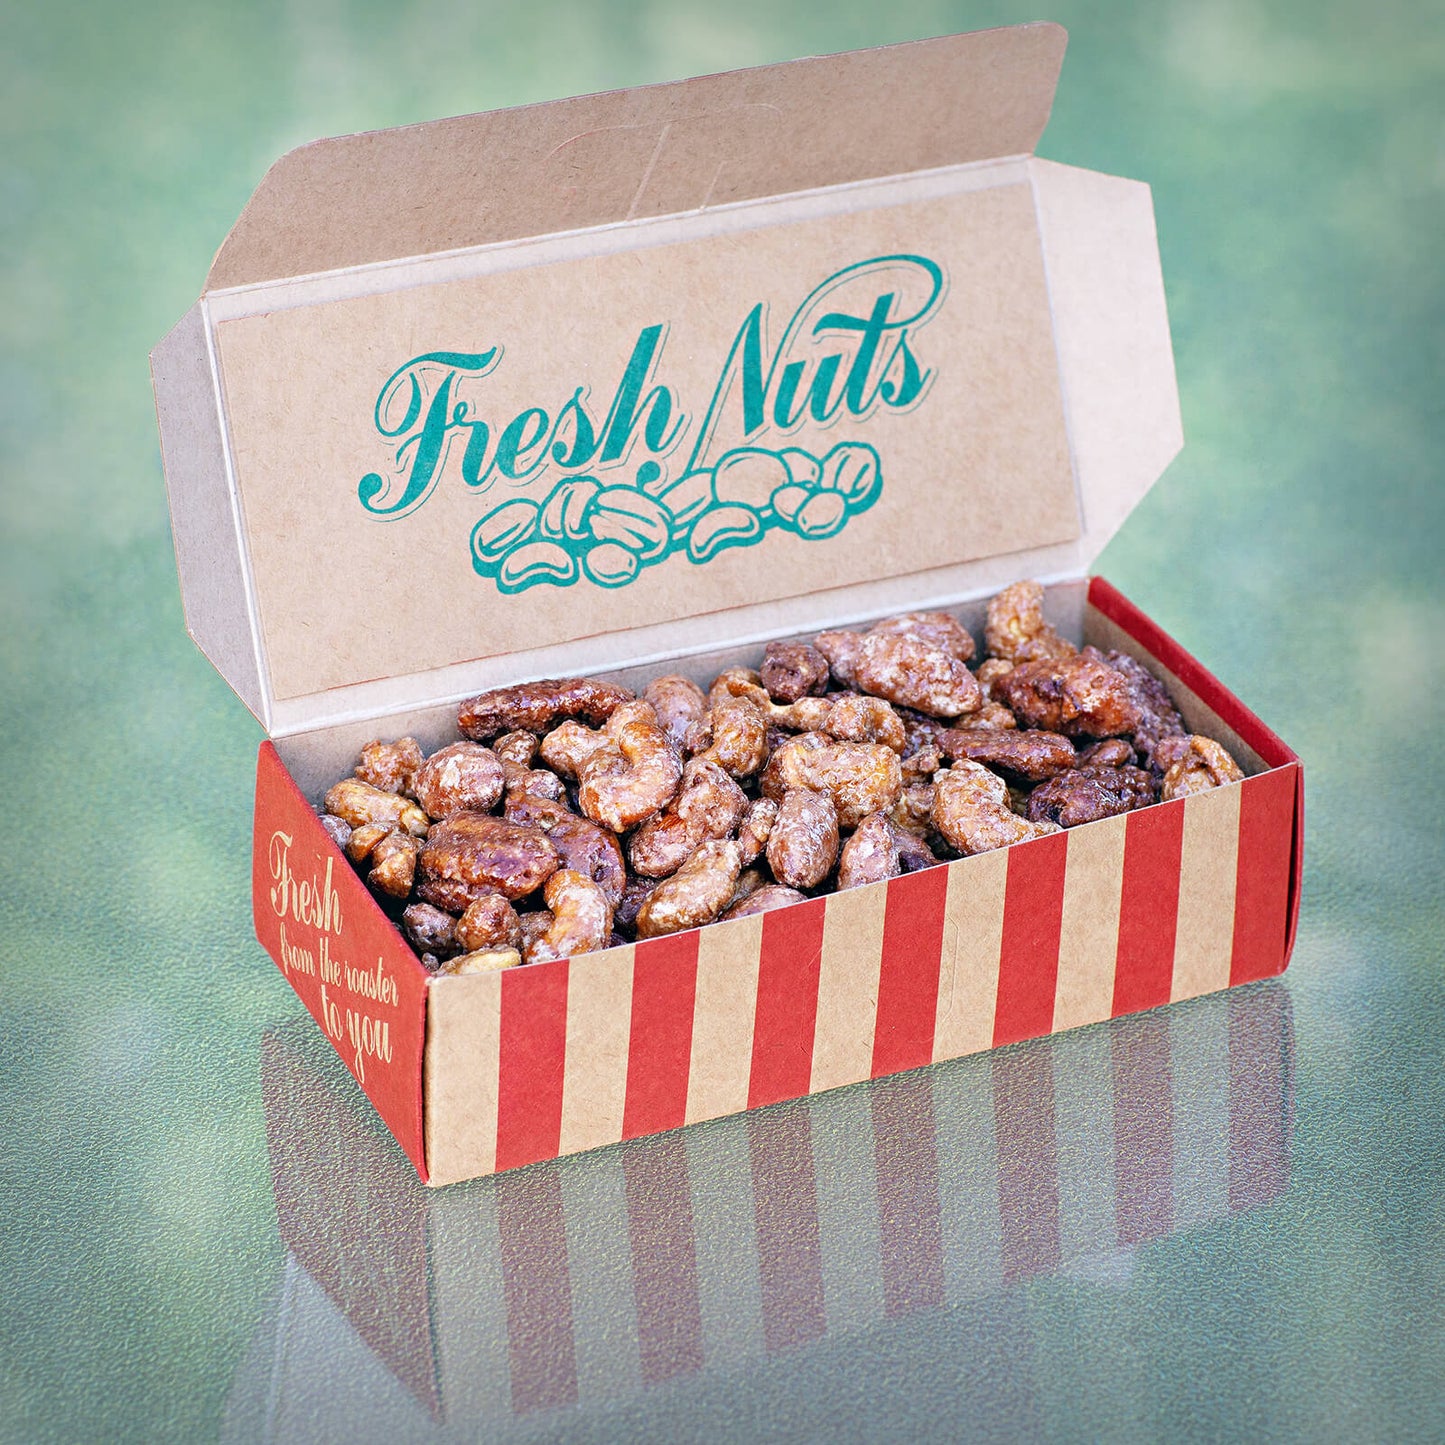 15 oz Fresh Nut Box